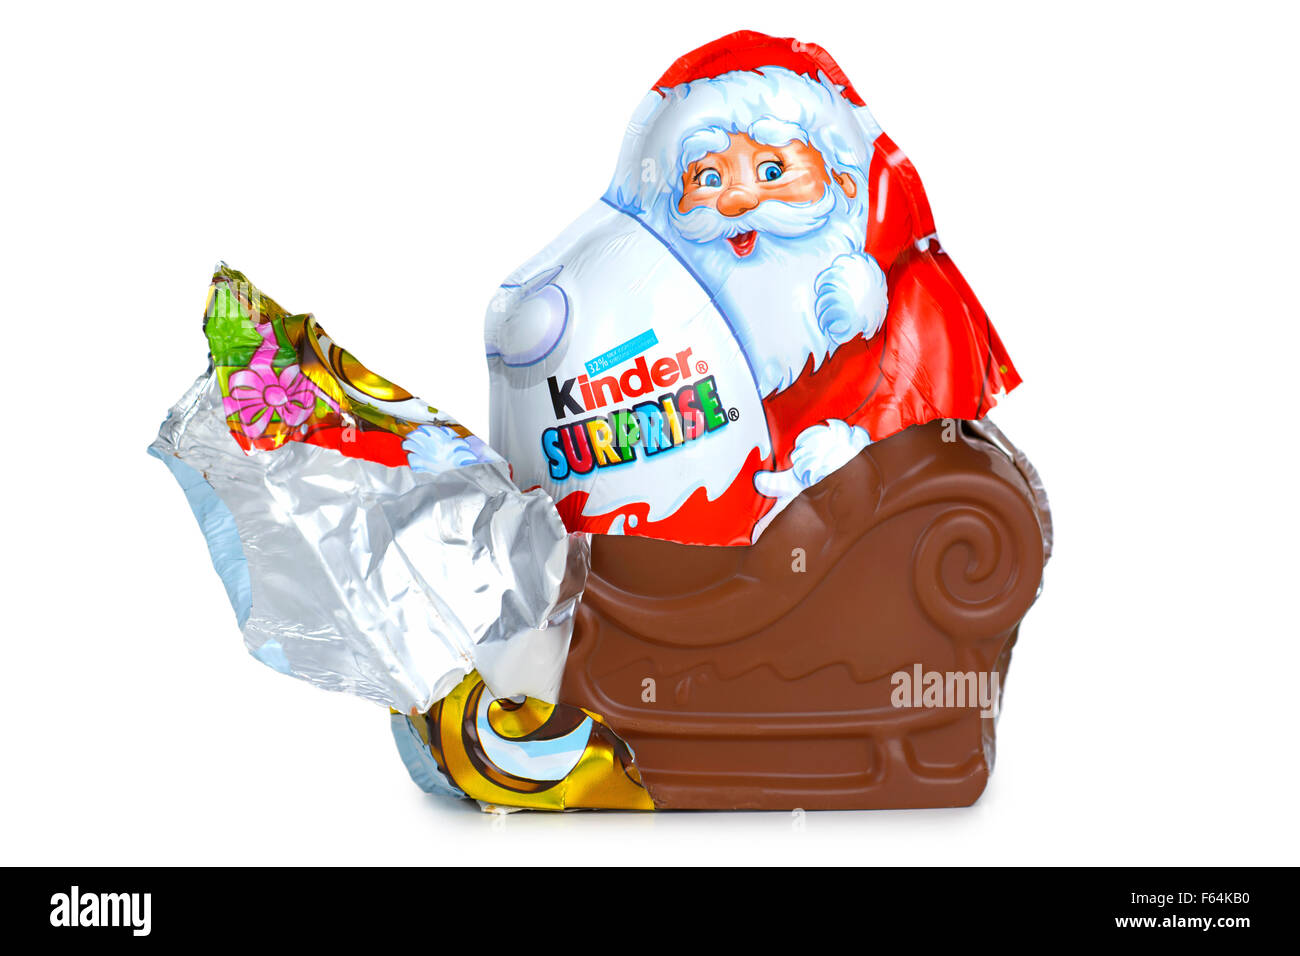 Kinder sorpresa Santa Claus, uovo Foto Stock